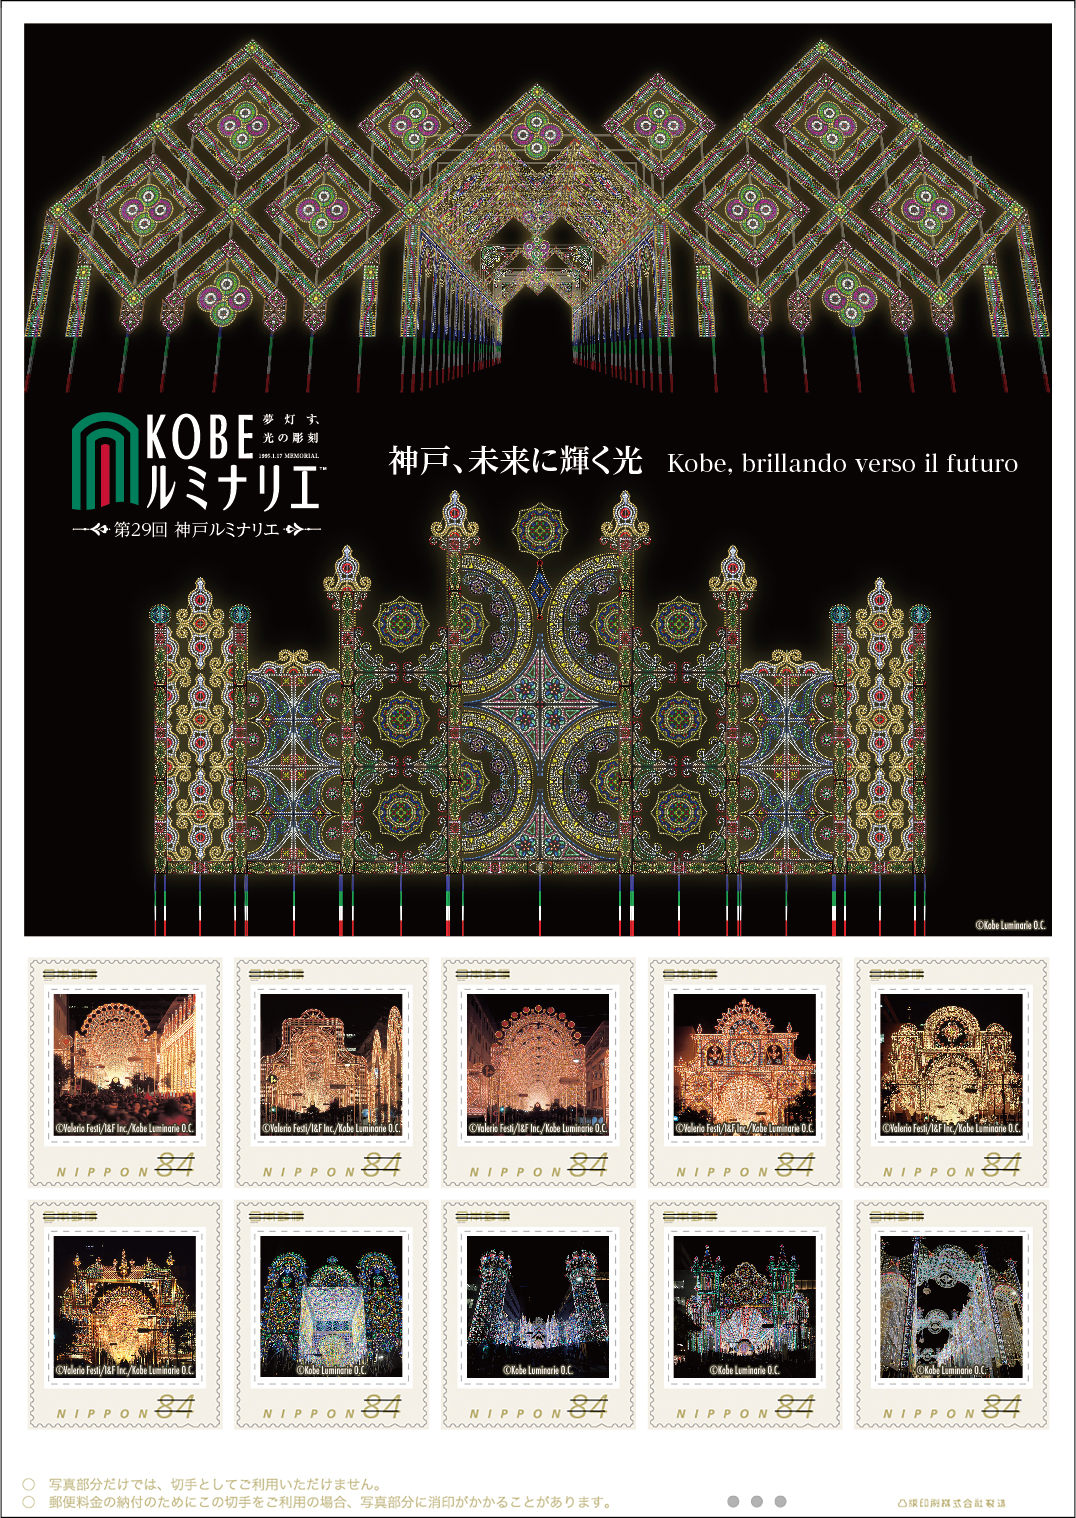 オリジナル フレーム切手『神戸ルミナリエ(XIII)』の販売開始